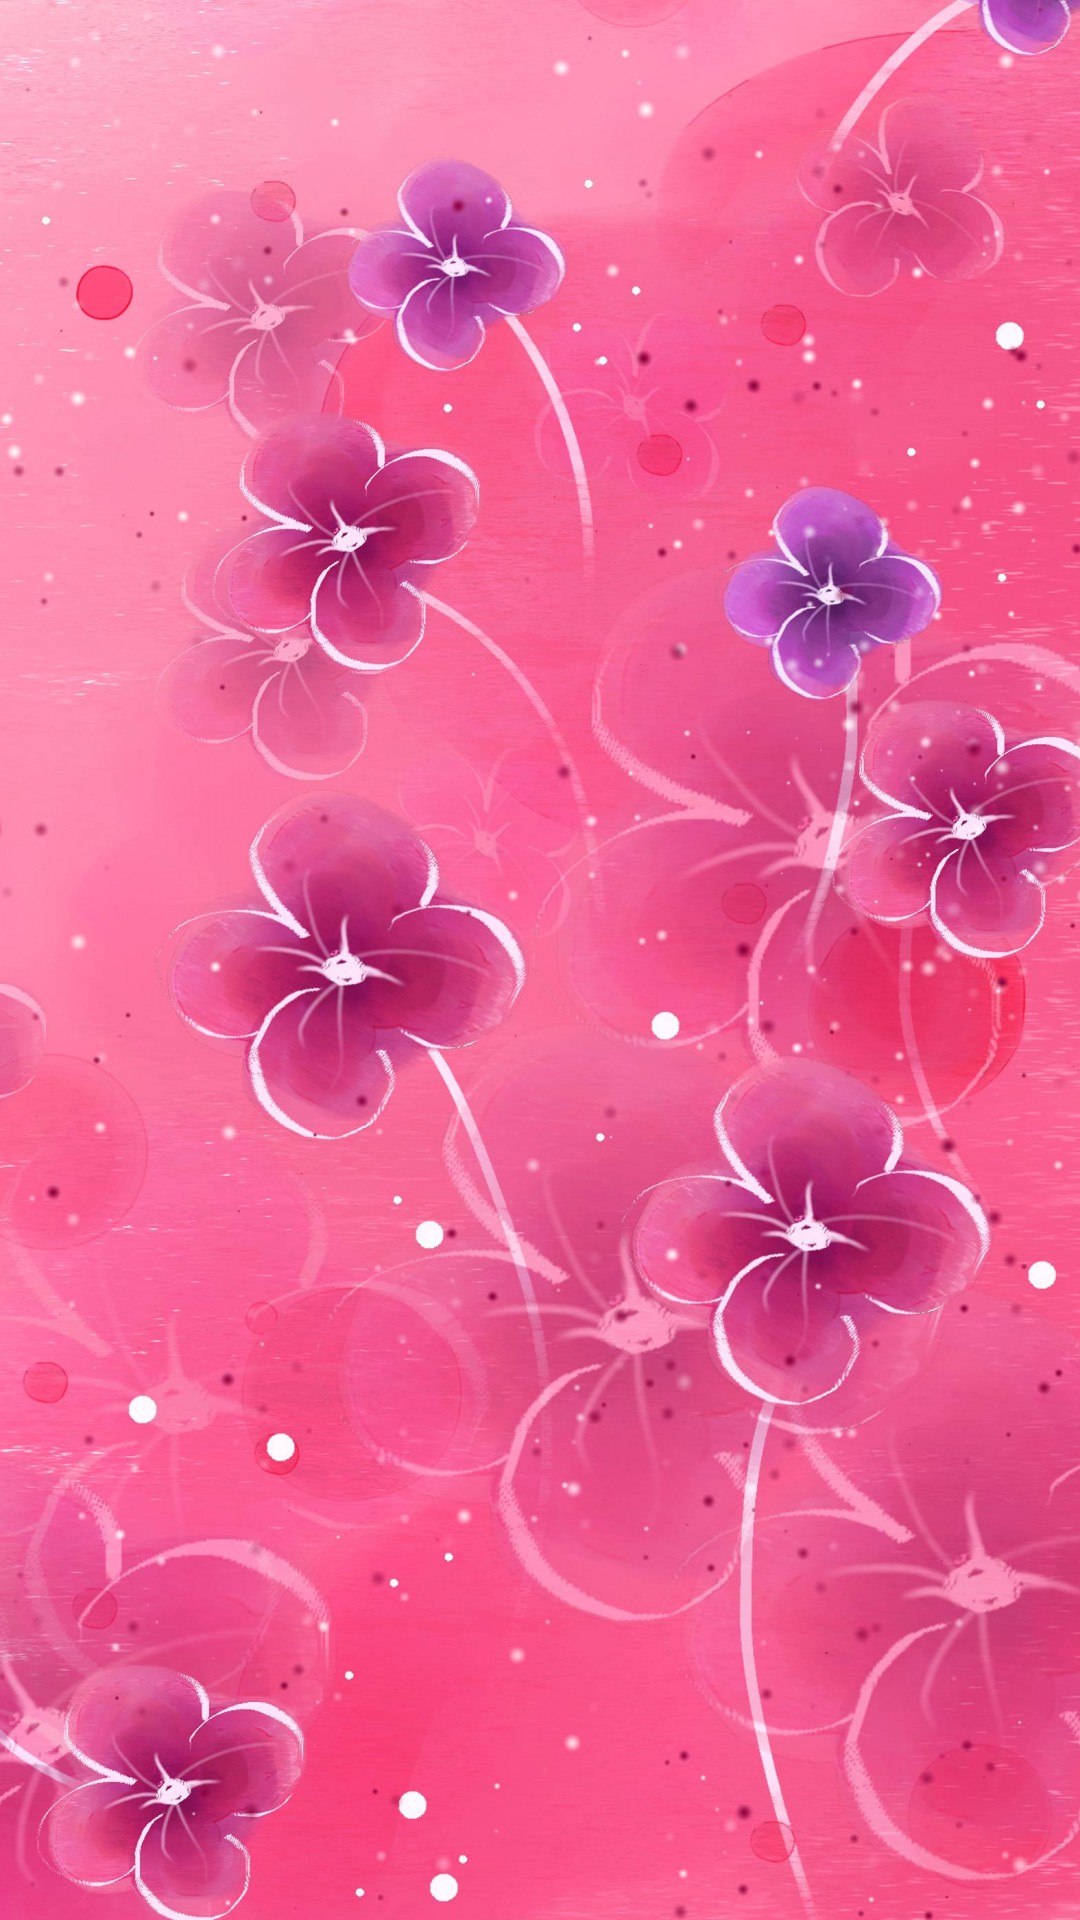 Pink_iPhone_wallpaper_10 - MacTrast